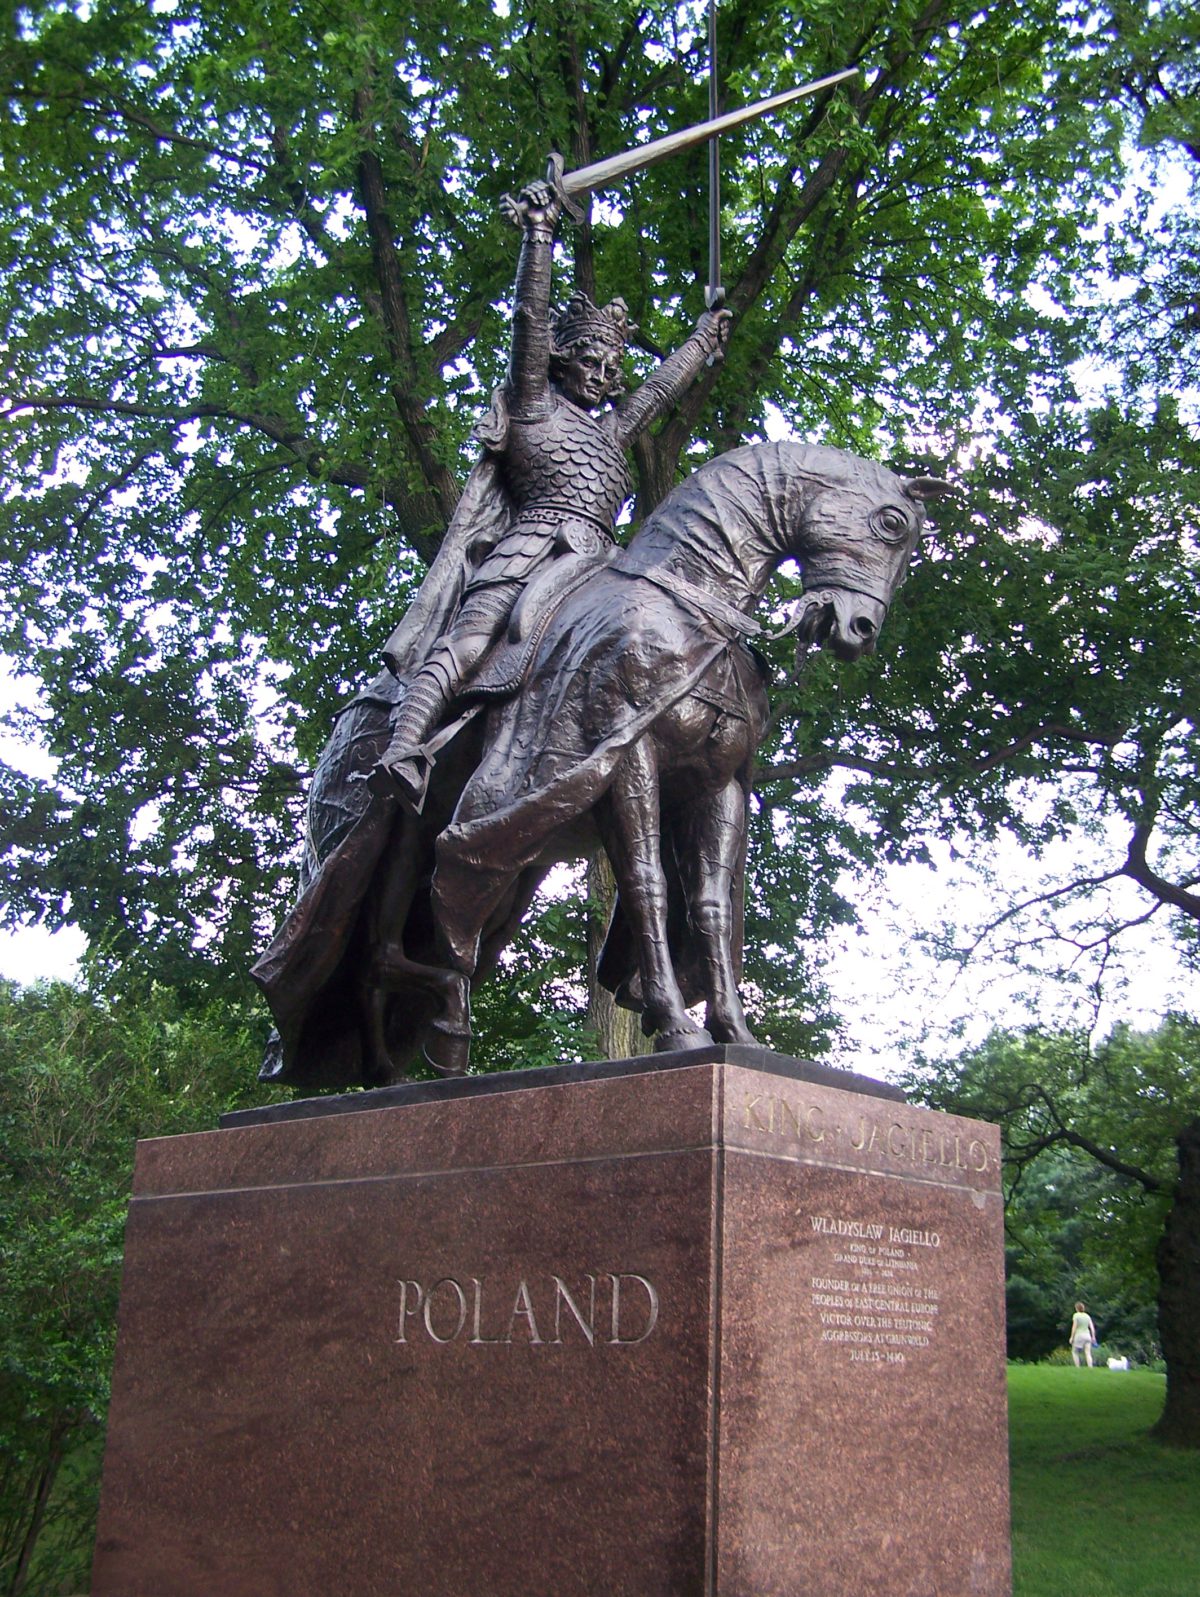 Odlany z brązu pomnik Władysława Jagiełły liczy 7 m wraz z cokołem. To największy ze wszystkich pomników ustawionych w Parku